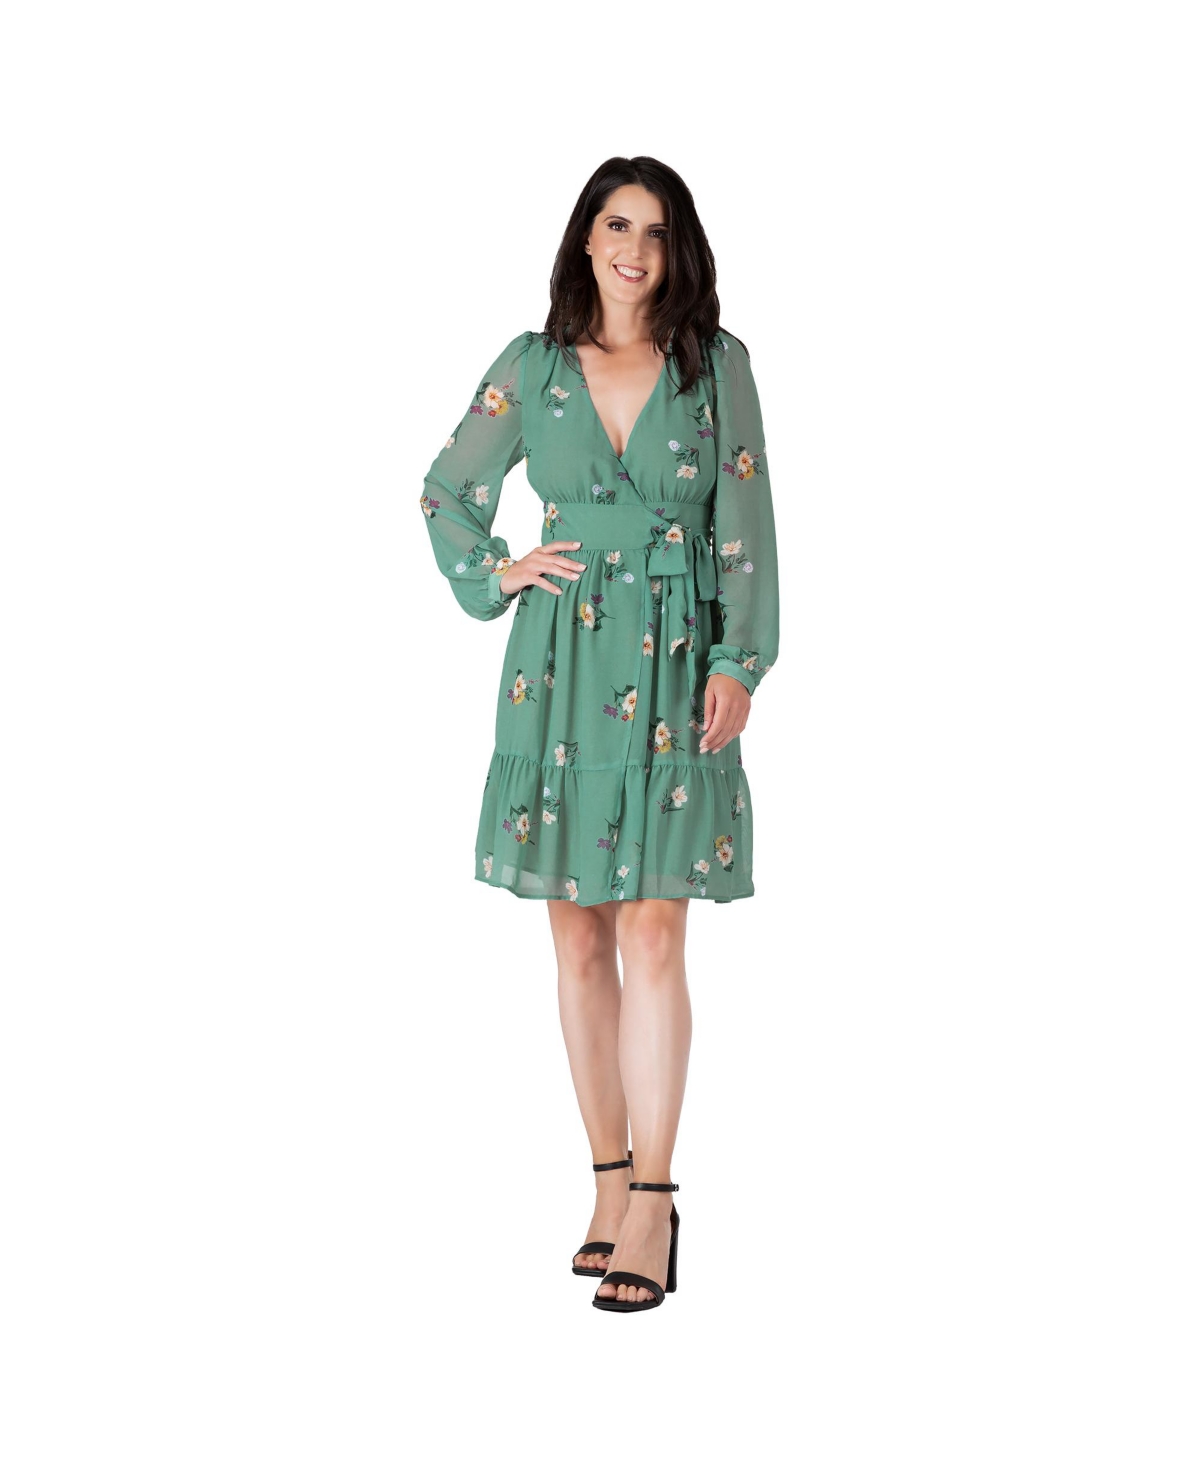 Women's Floral-Print Wrap Mini Dress - Sage green floral